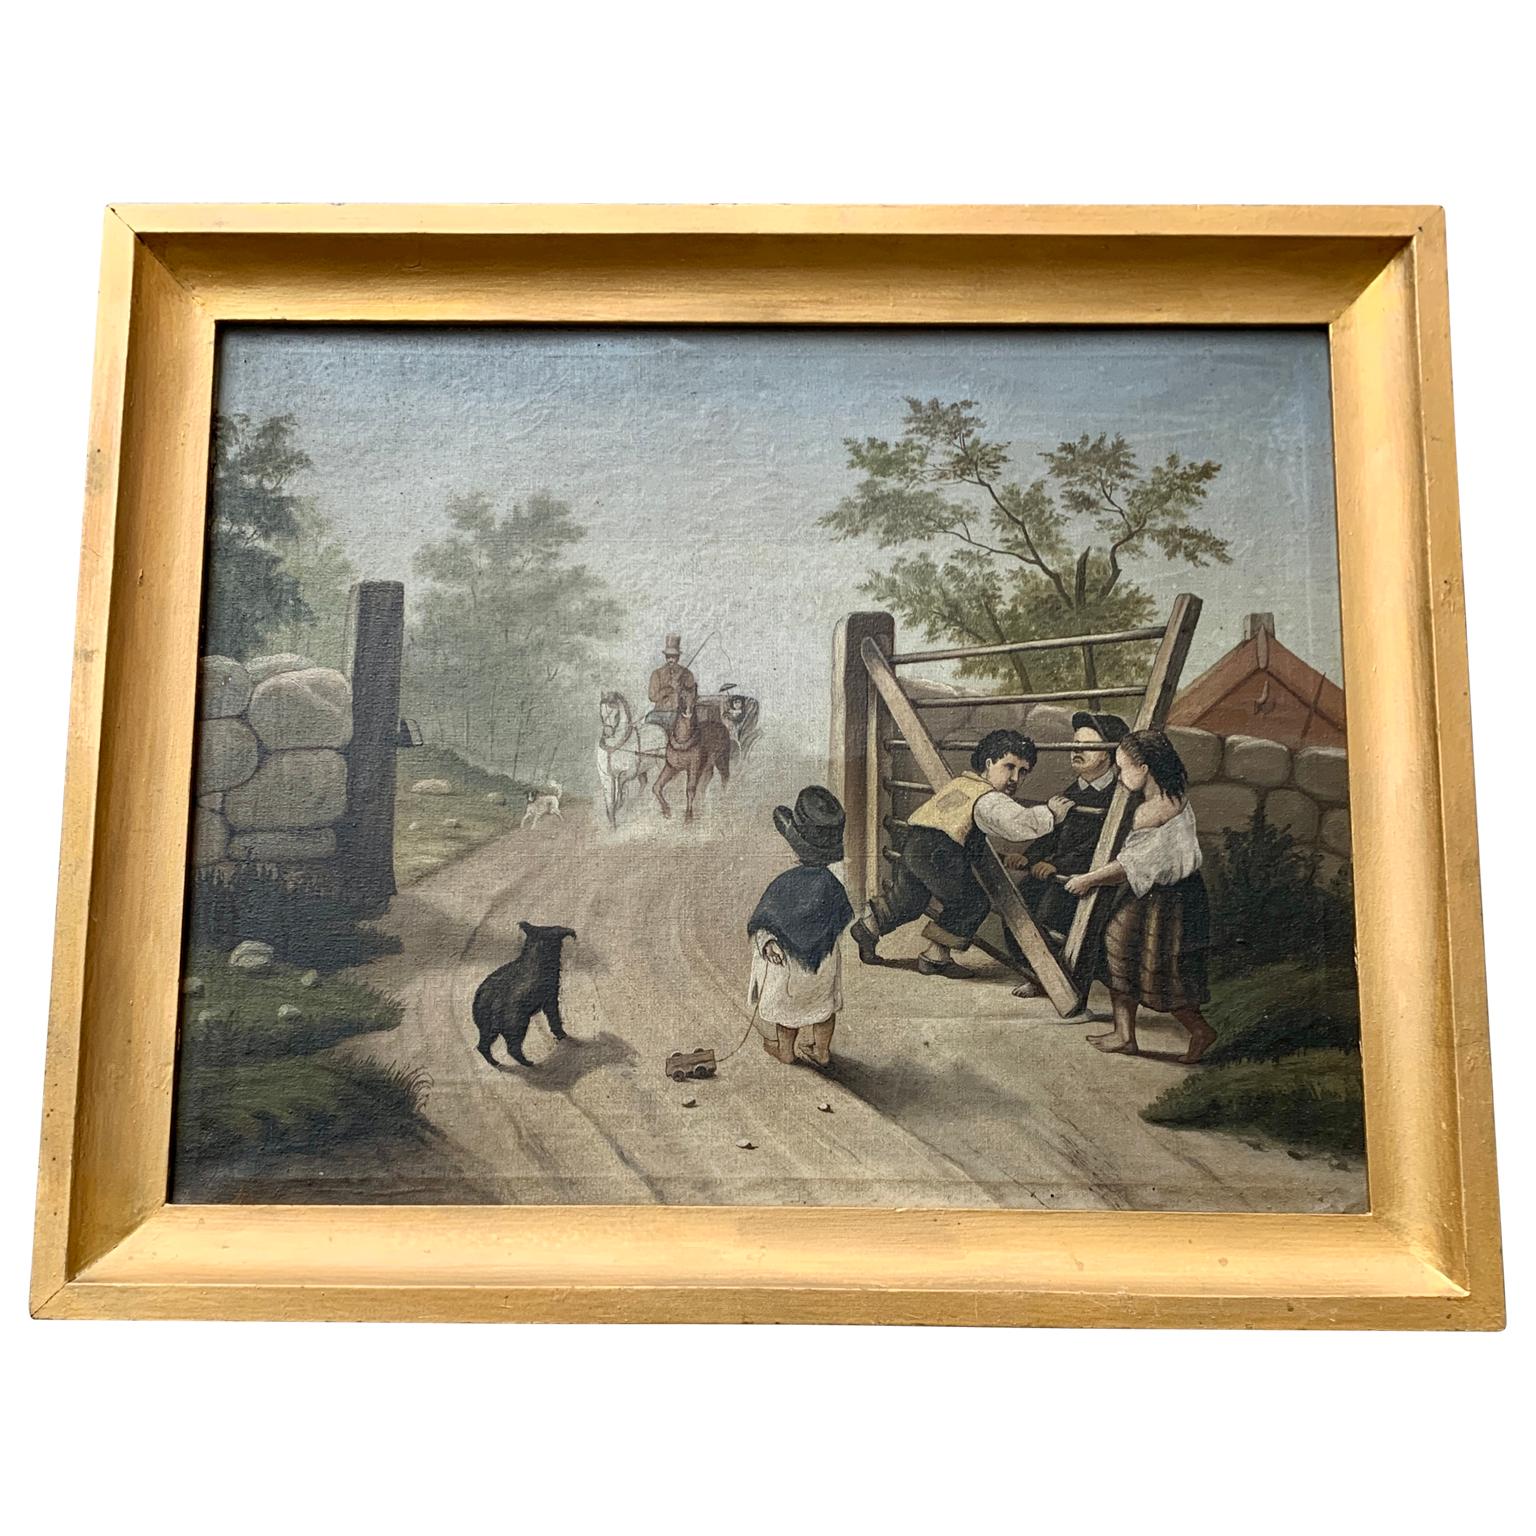 Peinture à l'huile naïve suédoise avec son cadre d'origine, datant de la deuxième partie du 19e siècle. 
Cette œuvre d'art populaire sur toile représente des enfants et un chien jouant près d'une cour, ouvrant la porte à une calèche avec une dame